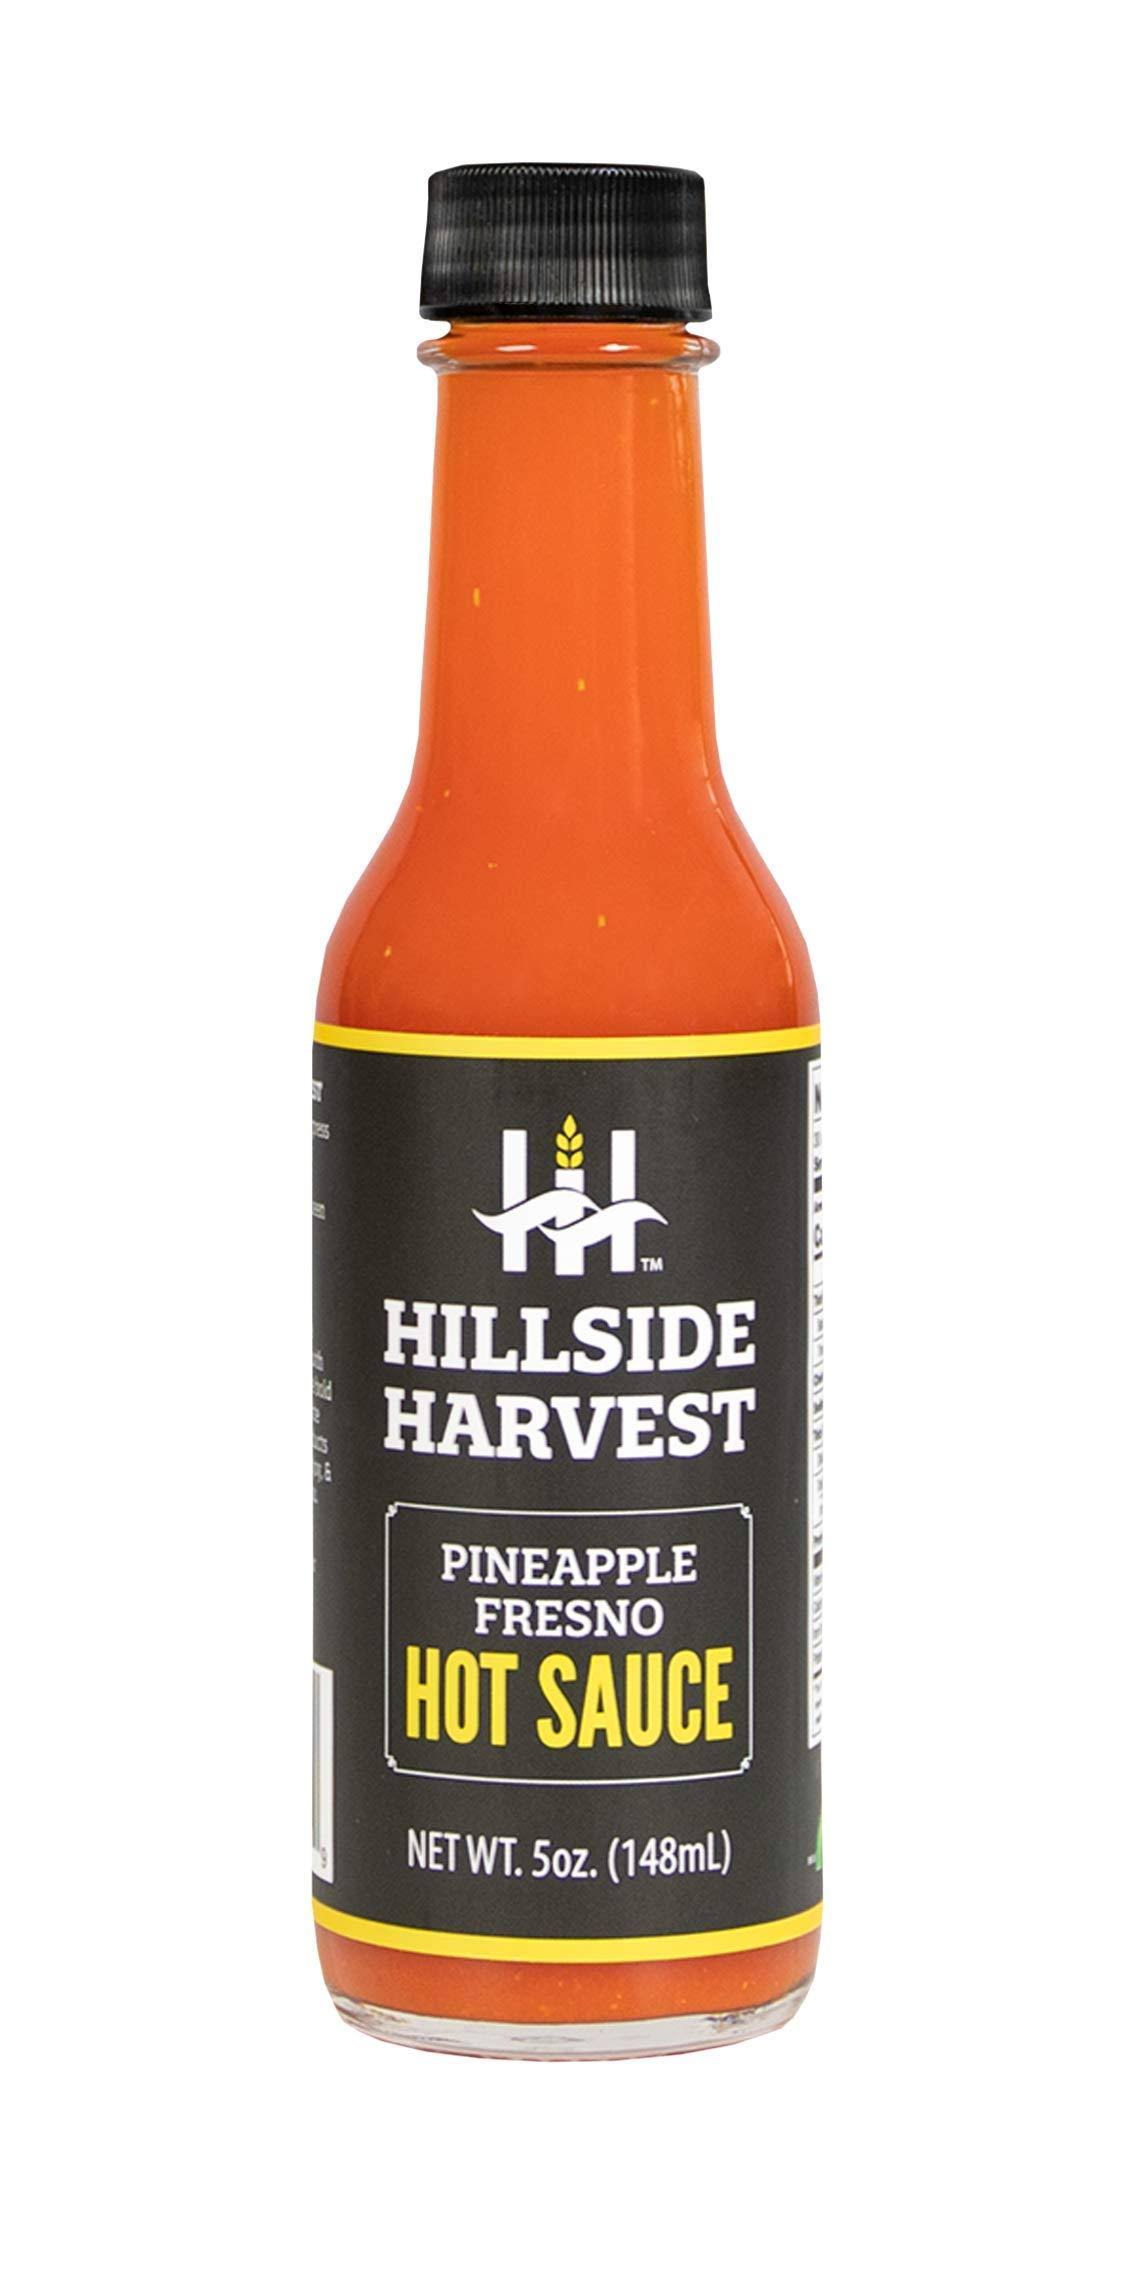 Hillside Harvest Hot Sauce, Pineapple Fresno